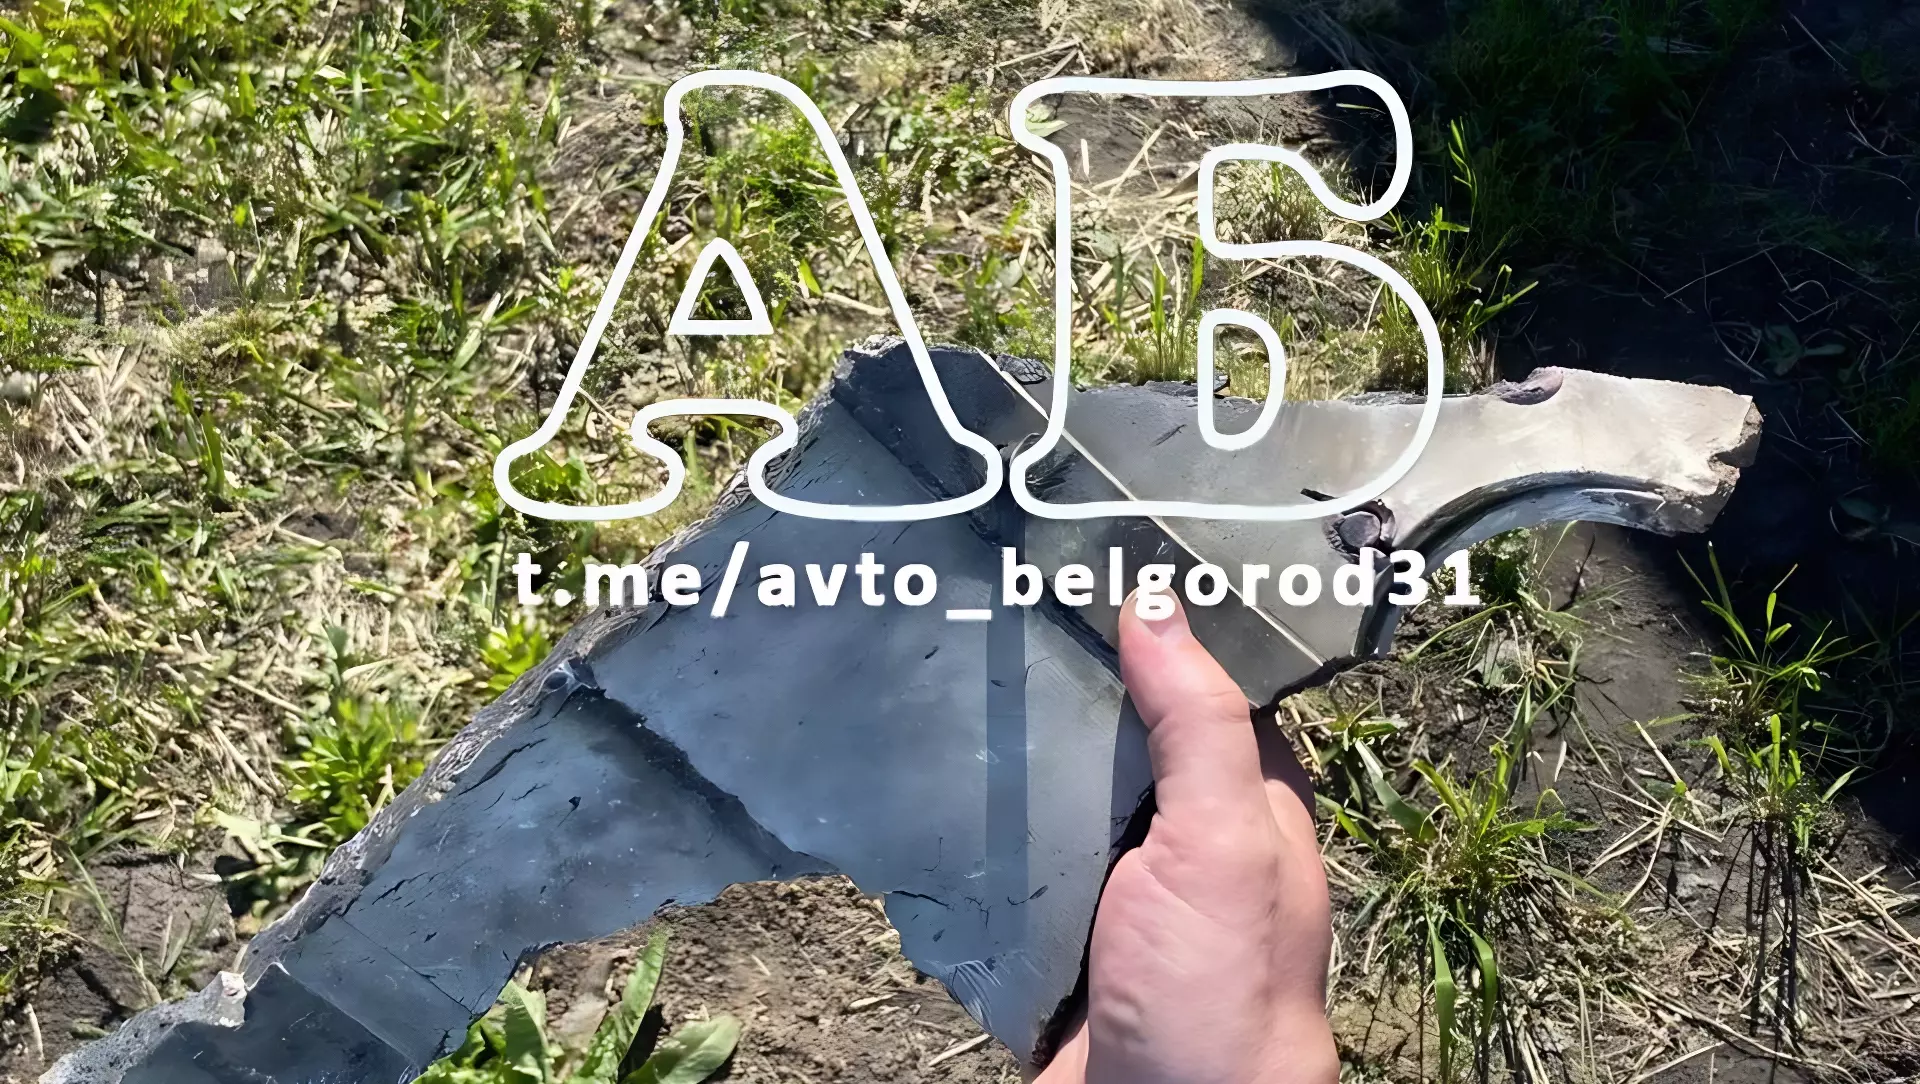 Обломок сбитого предмета, найденный после громких звуков в Белгороде и Белгородском районе